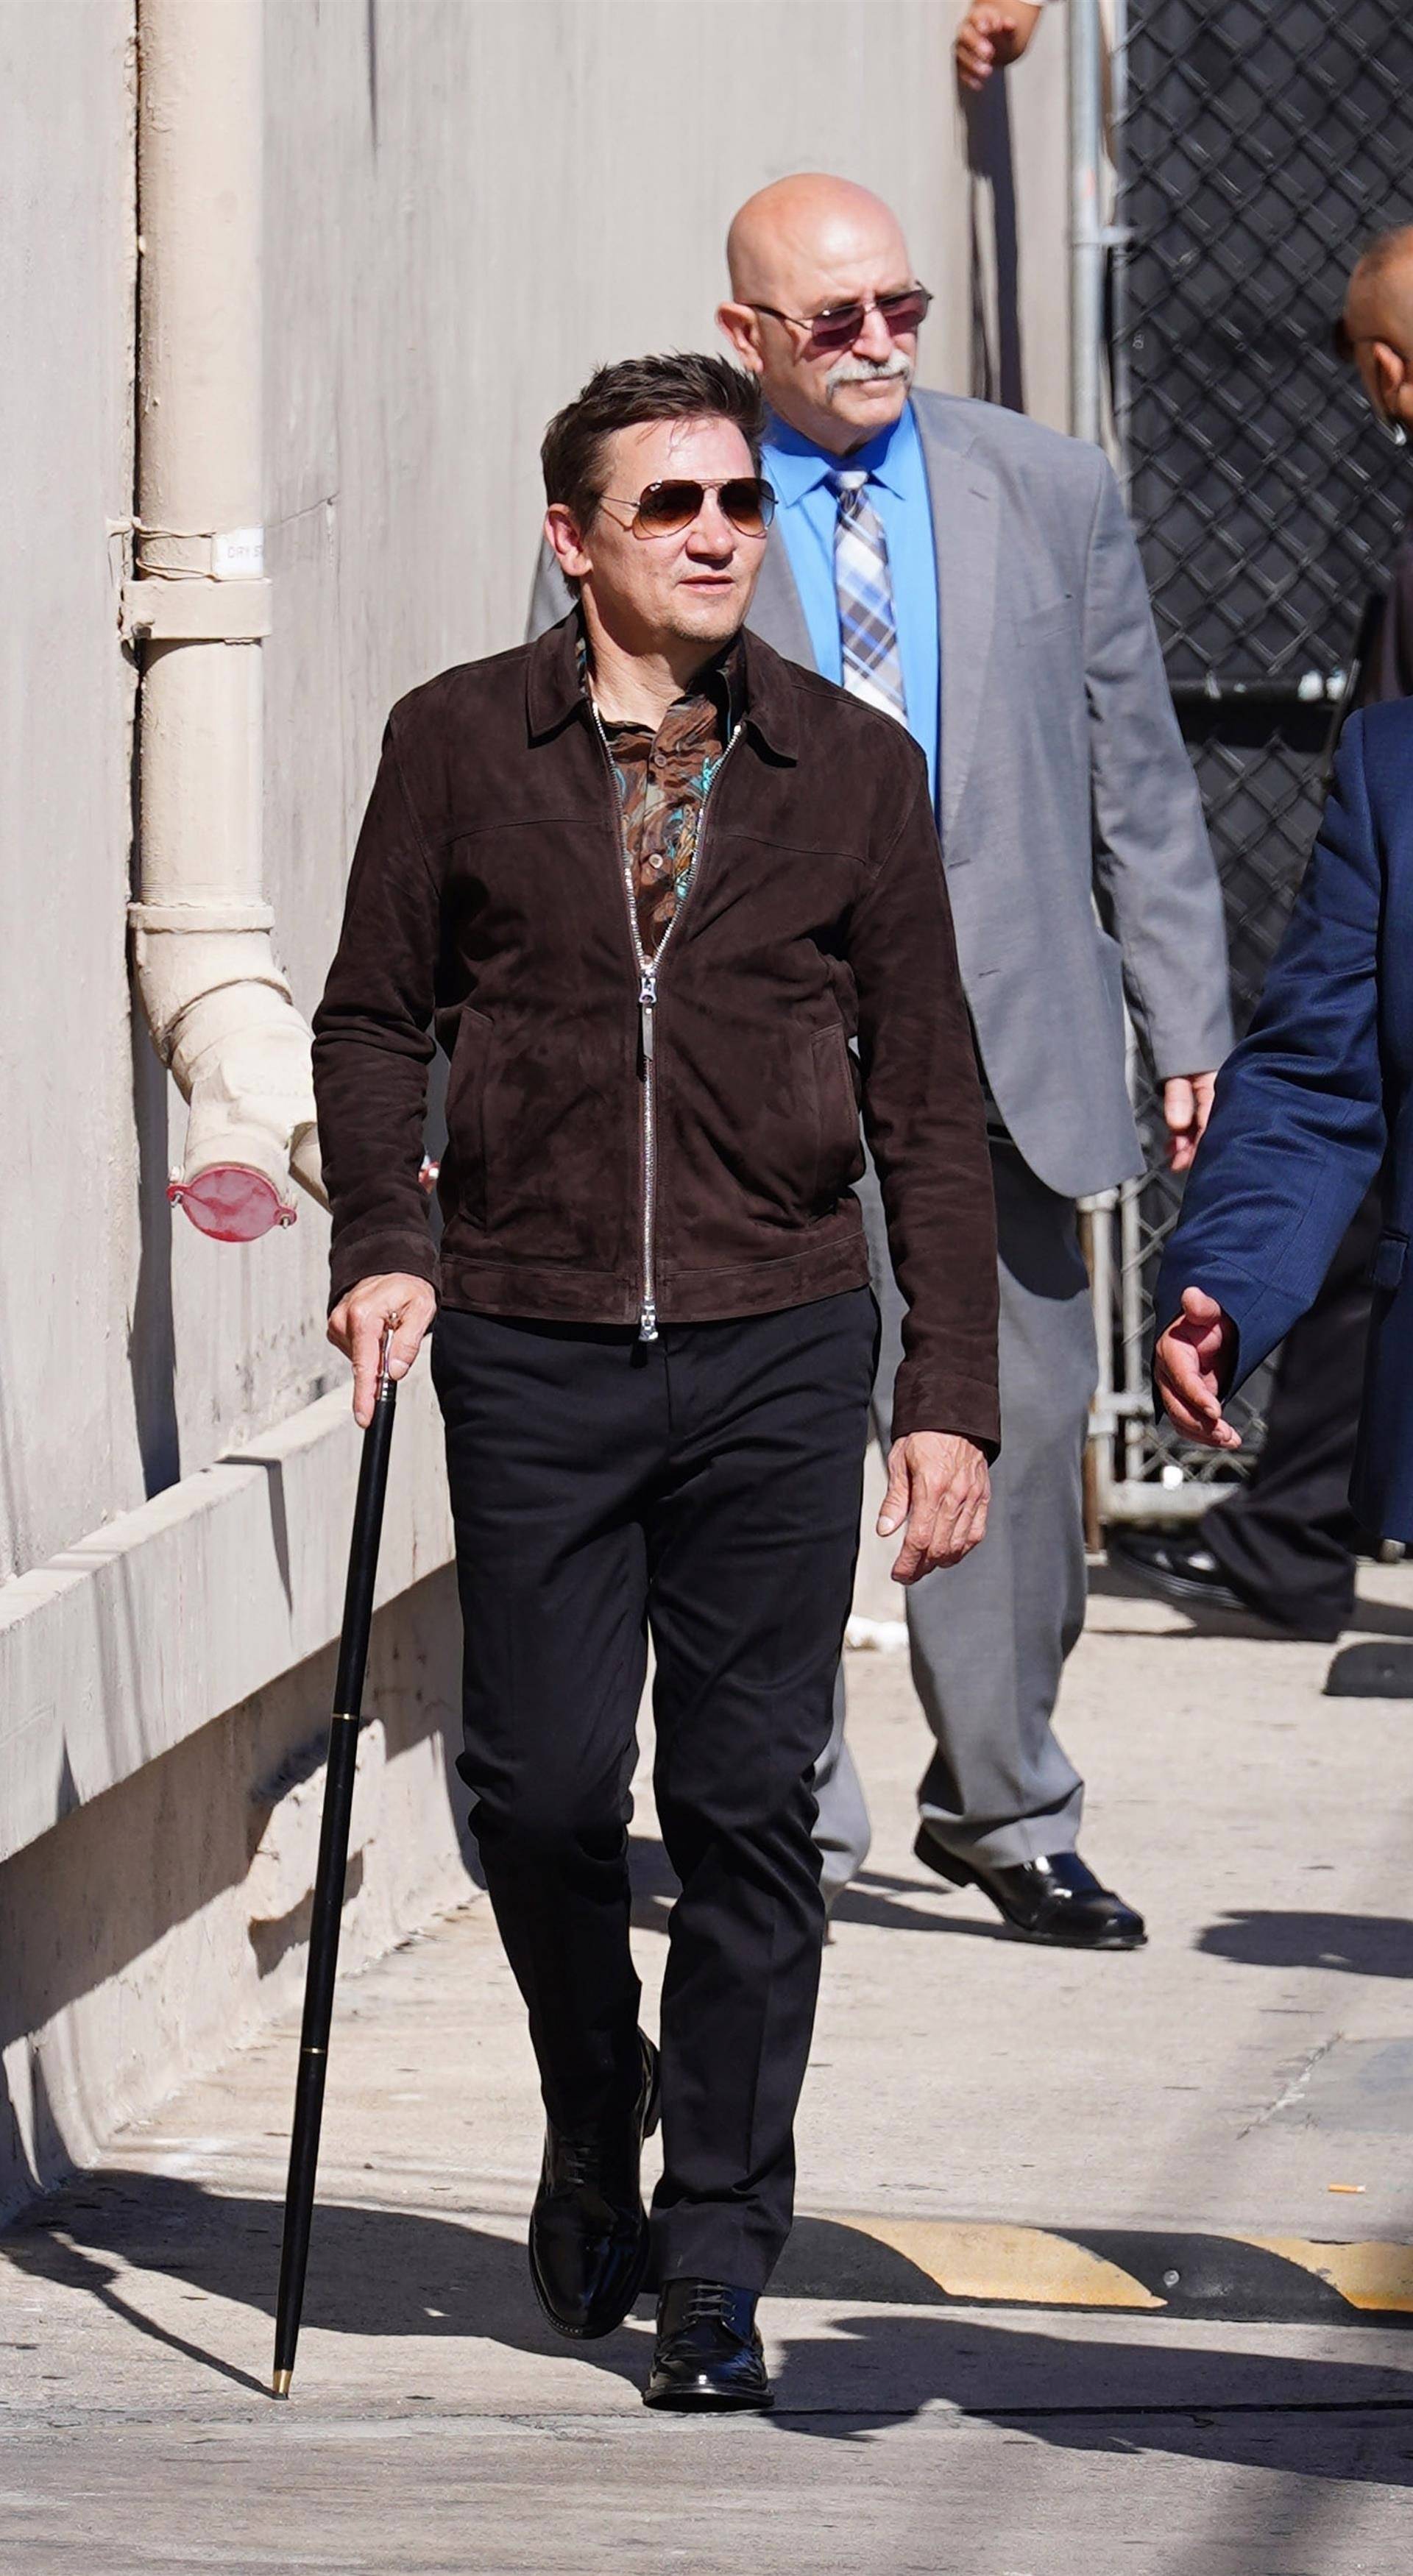 Jeremy Renner arrives at Jimmy Kimmel Live in Hollywood